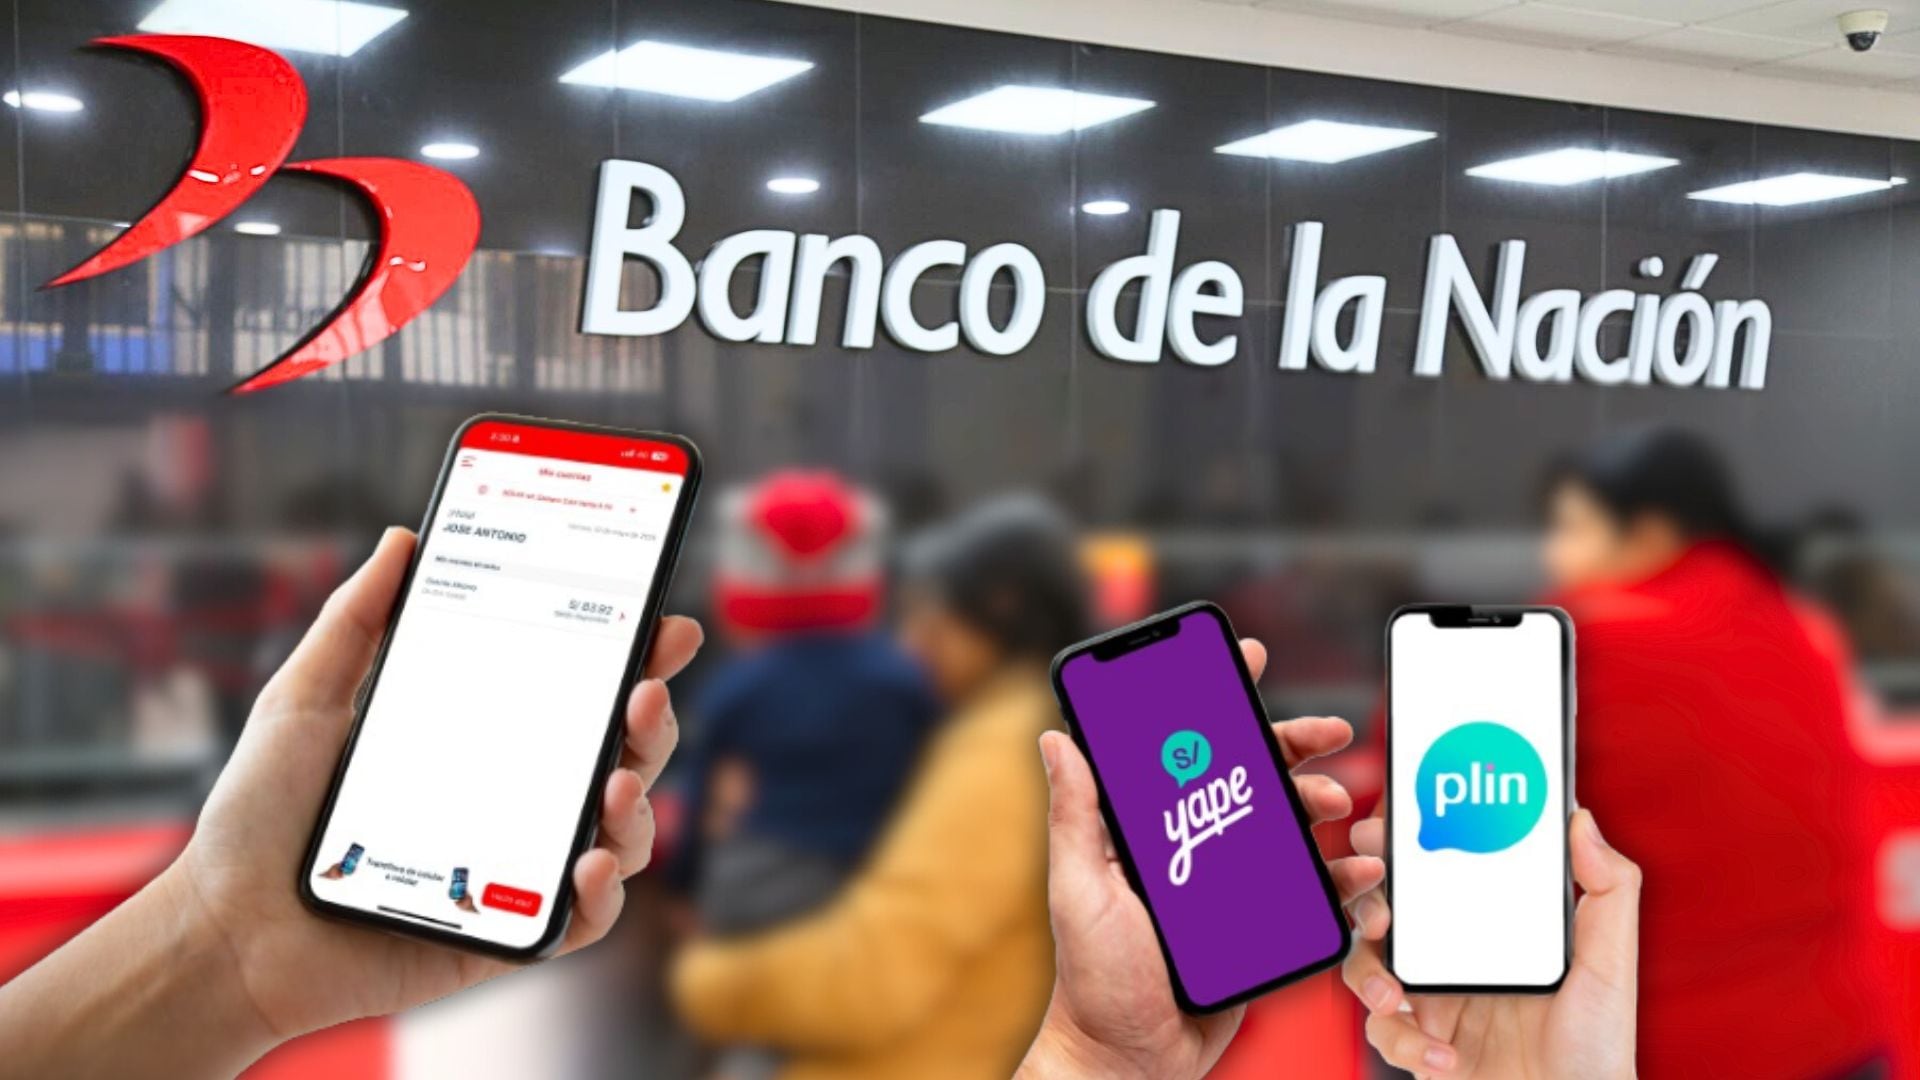 Banco de la Nación y celulares con su aplicación, Yape y Plin